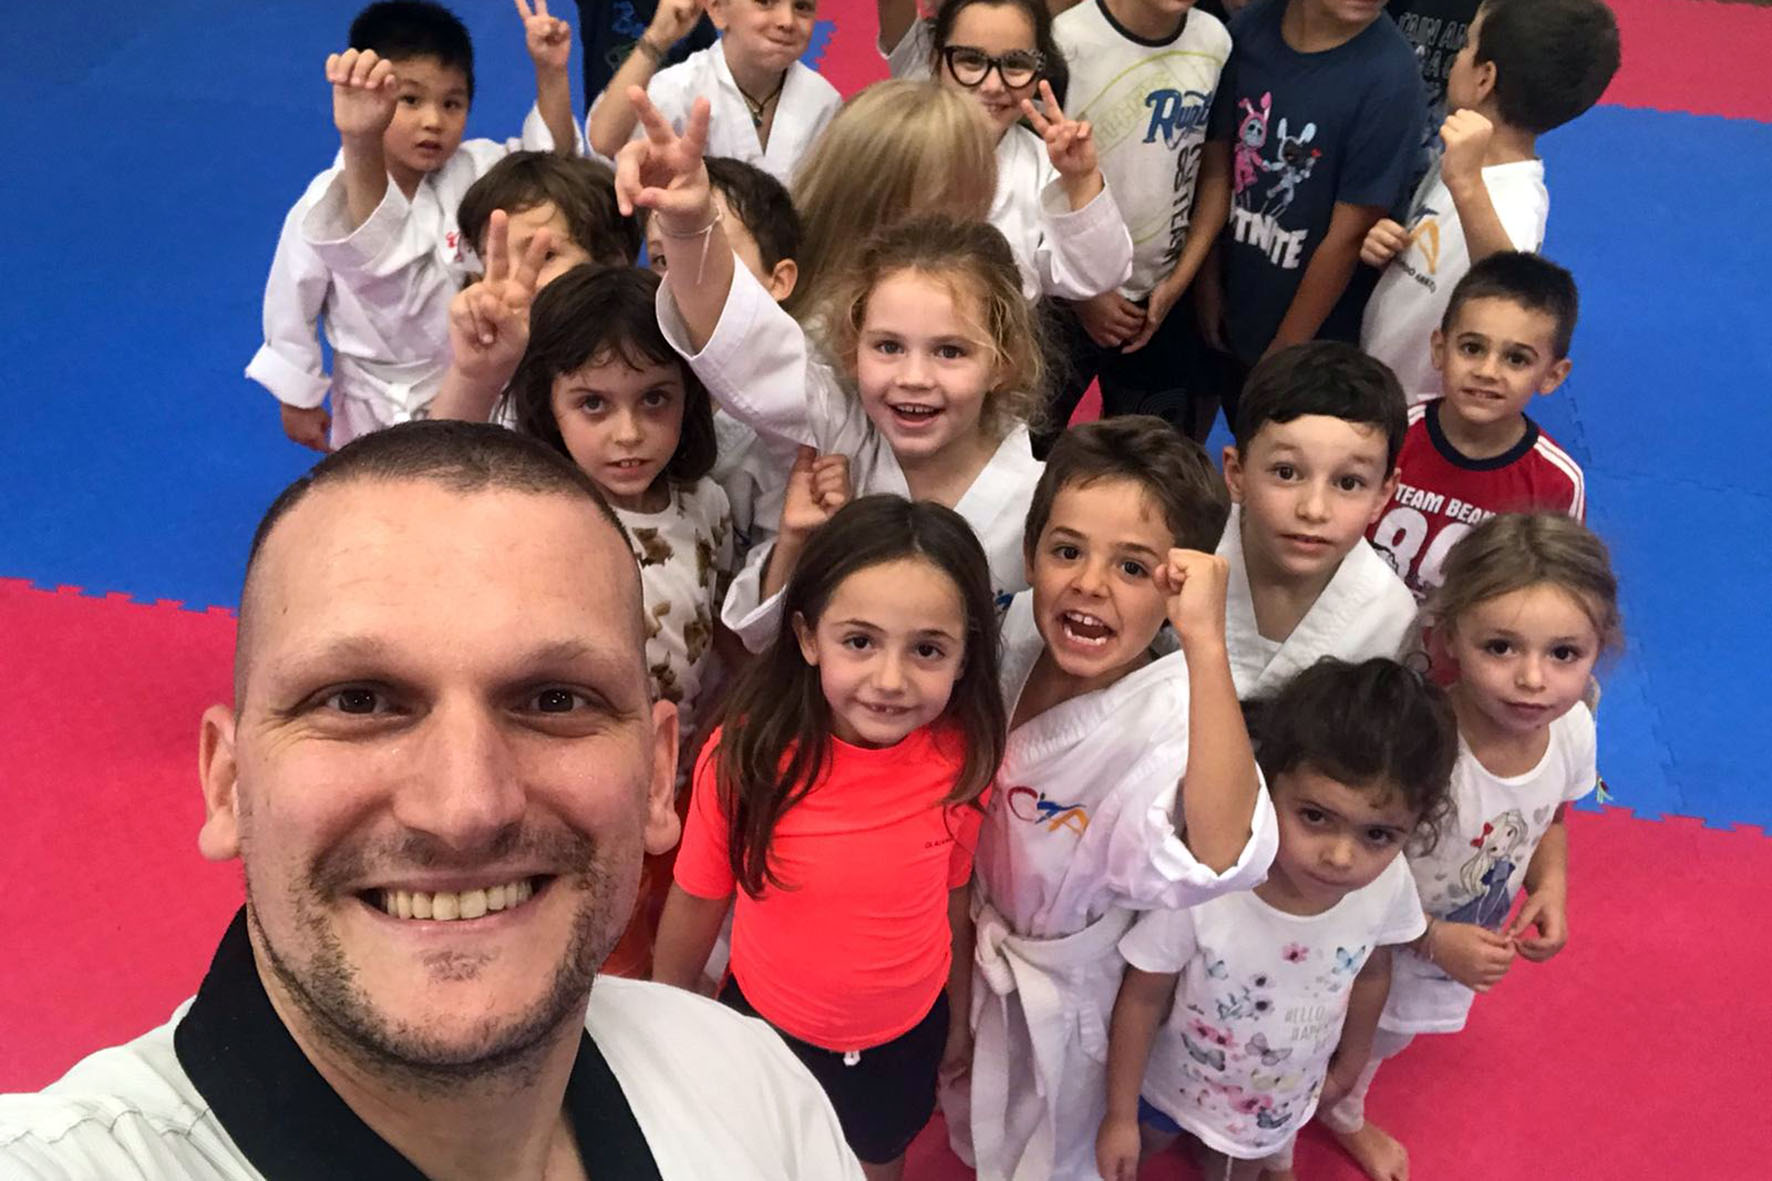 Il taekwondo per bambini: ad Arezzo prende il via il Gioco Tae